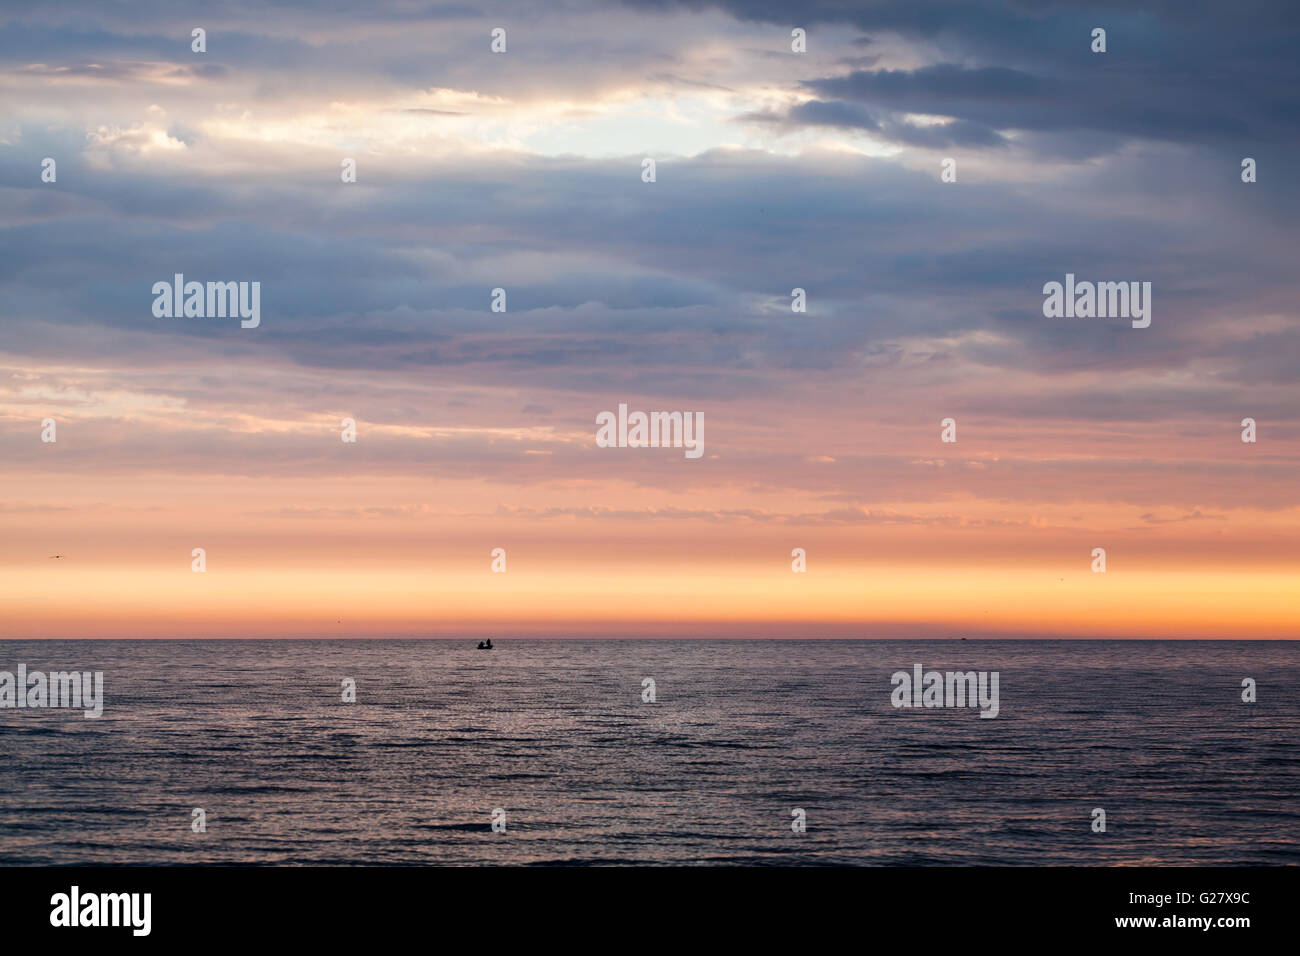 Farbenprächtigen Sonnenuntergang über der Ostsee, bewölkter Himmel, stilles Wasser und Fischer auf einem kleinen Boot in der Ferne Stockfoto